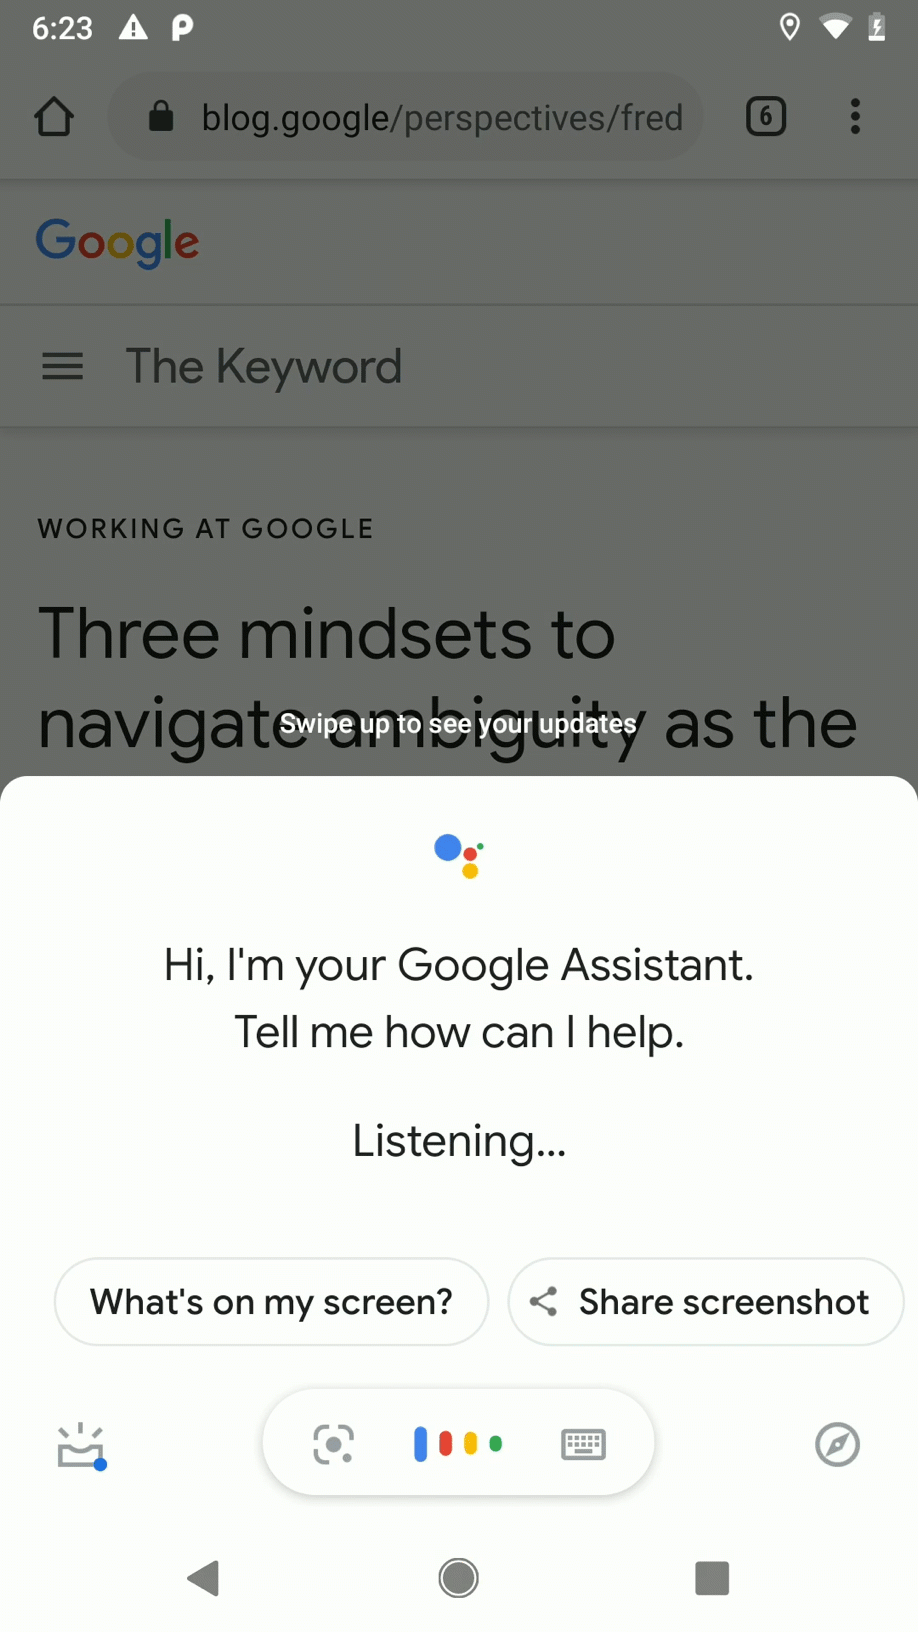 Lorsqu'une requête de lecture lui est envoyée, une application lit le contenu Web à l'écran à l'aide de l'Assistant Google.